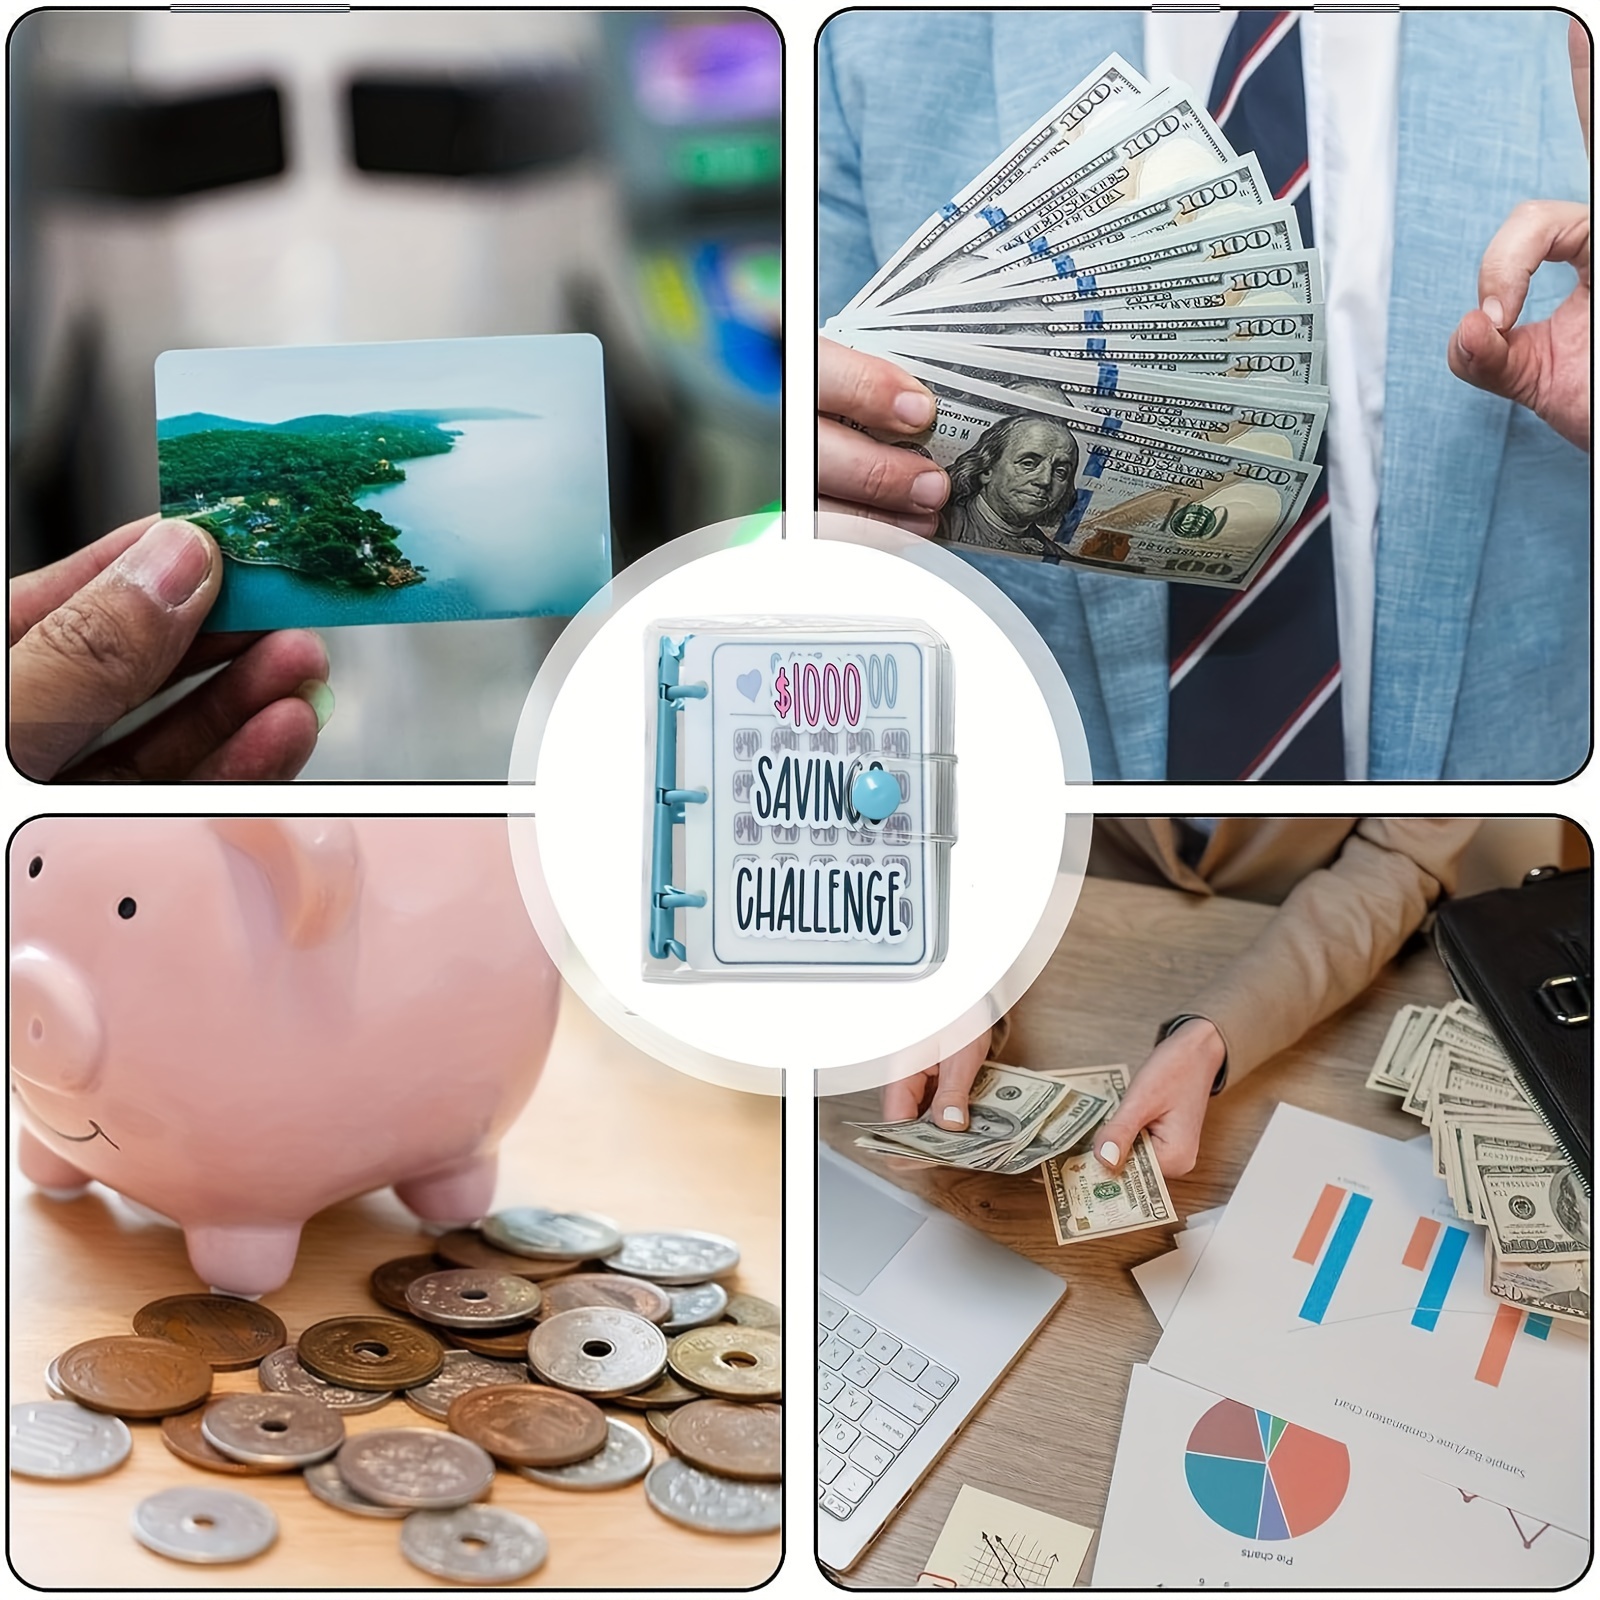 1000 Savings Challenge Binder, Money Saving Binder, Money Saving Challenge, Envelope Savings Challenge, Mini Budget Binder with Cash Envelopes